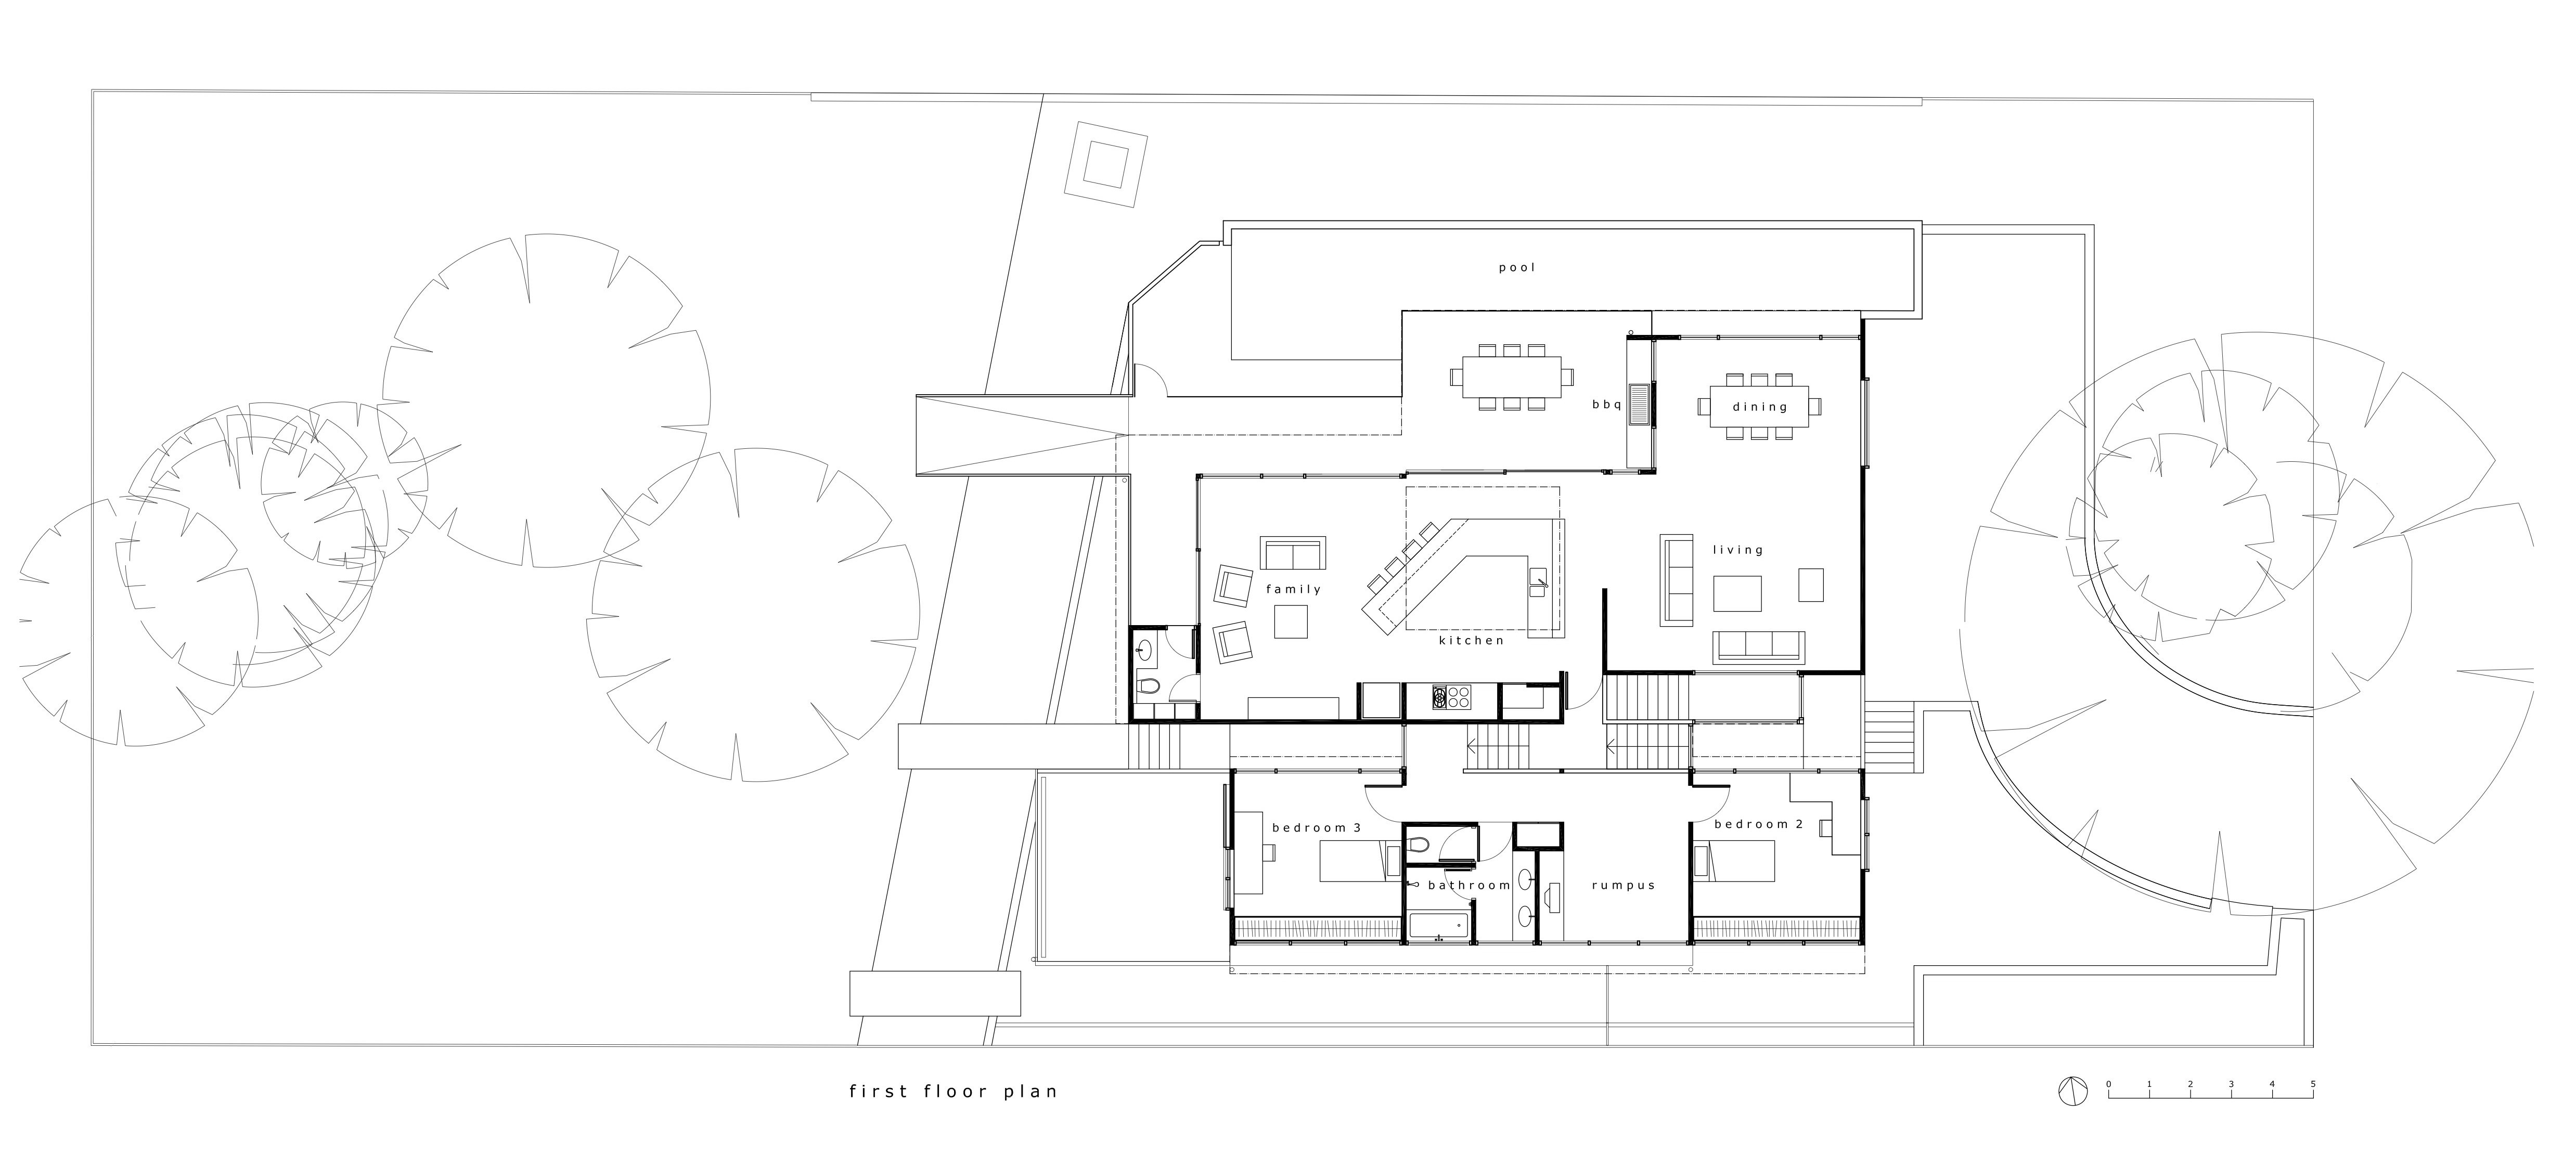 Fullagar Residence_plan 1_first floor_Stephen Varady Image ©